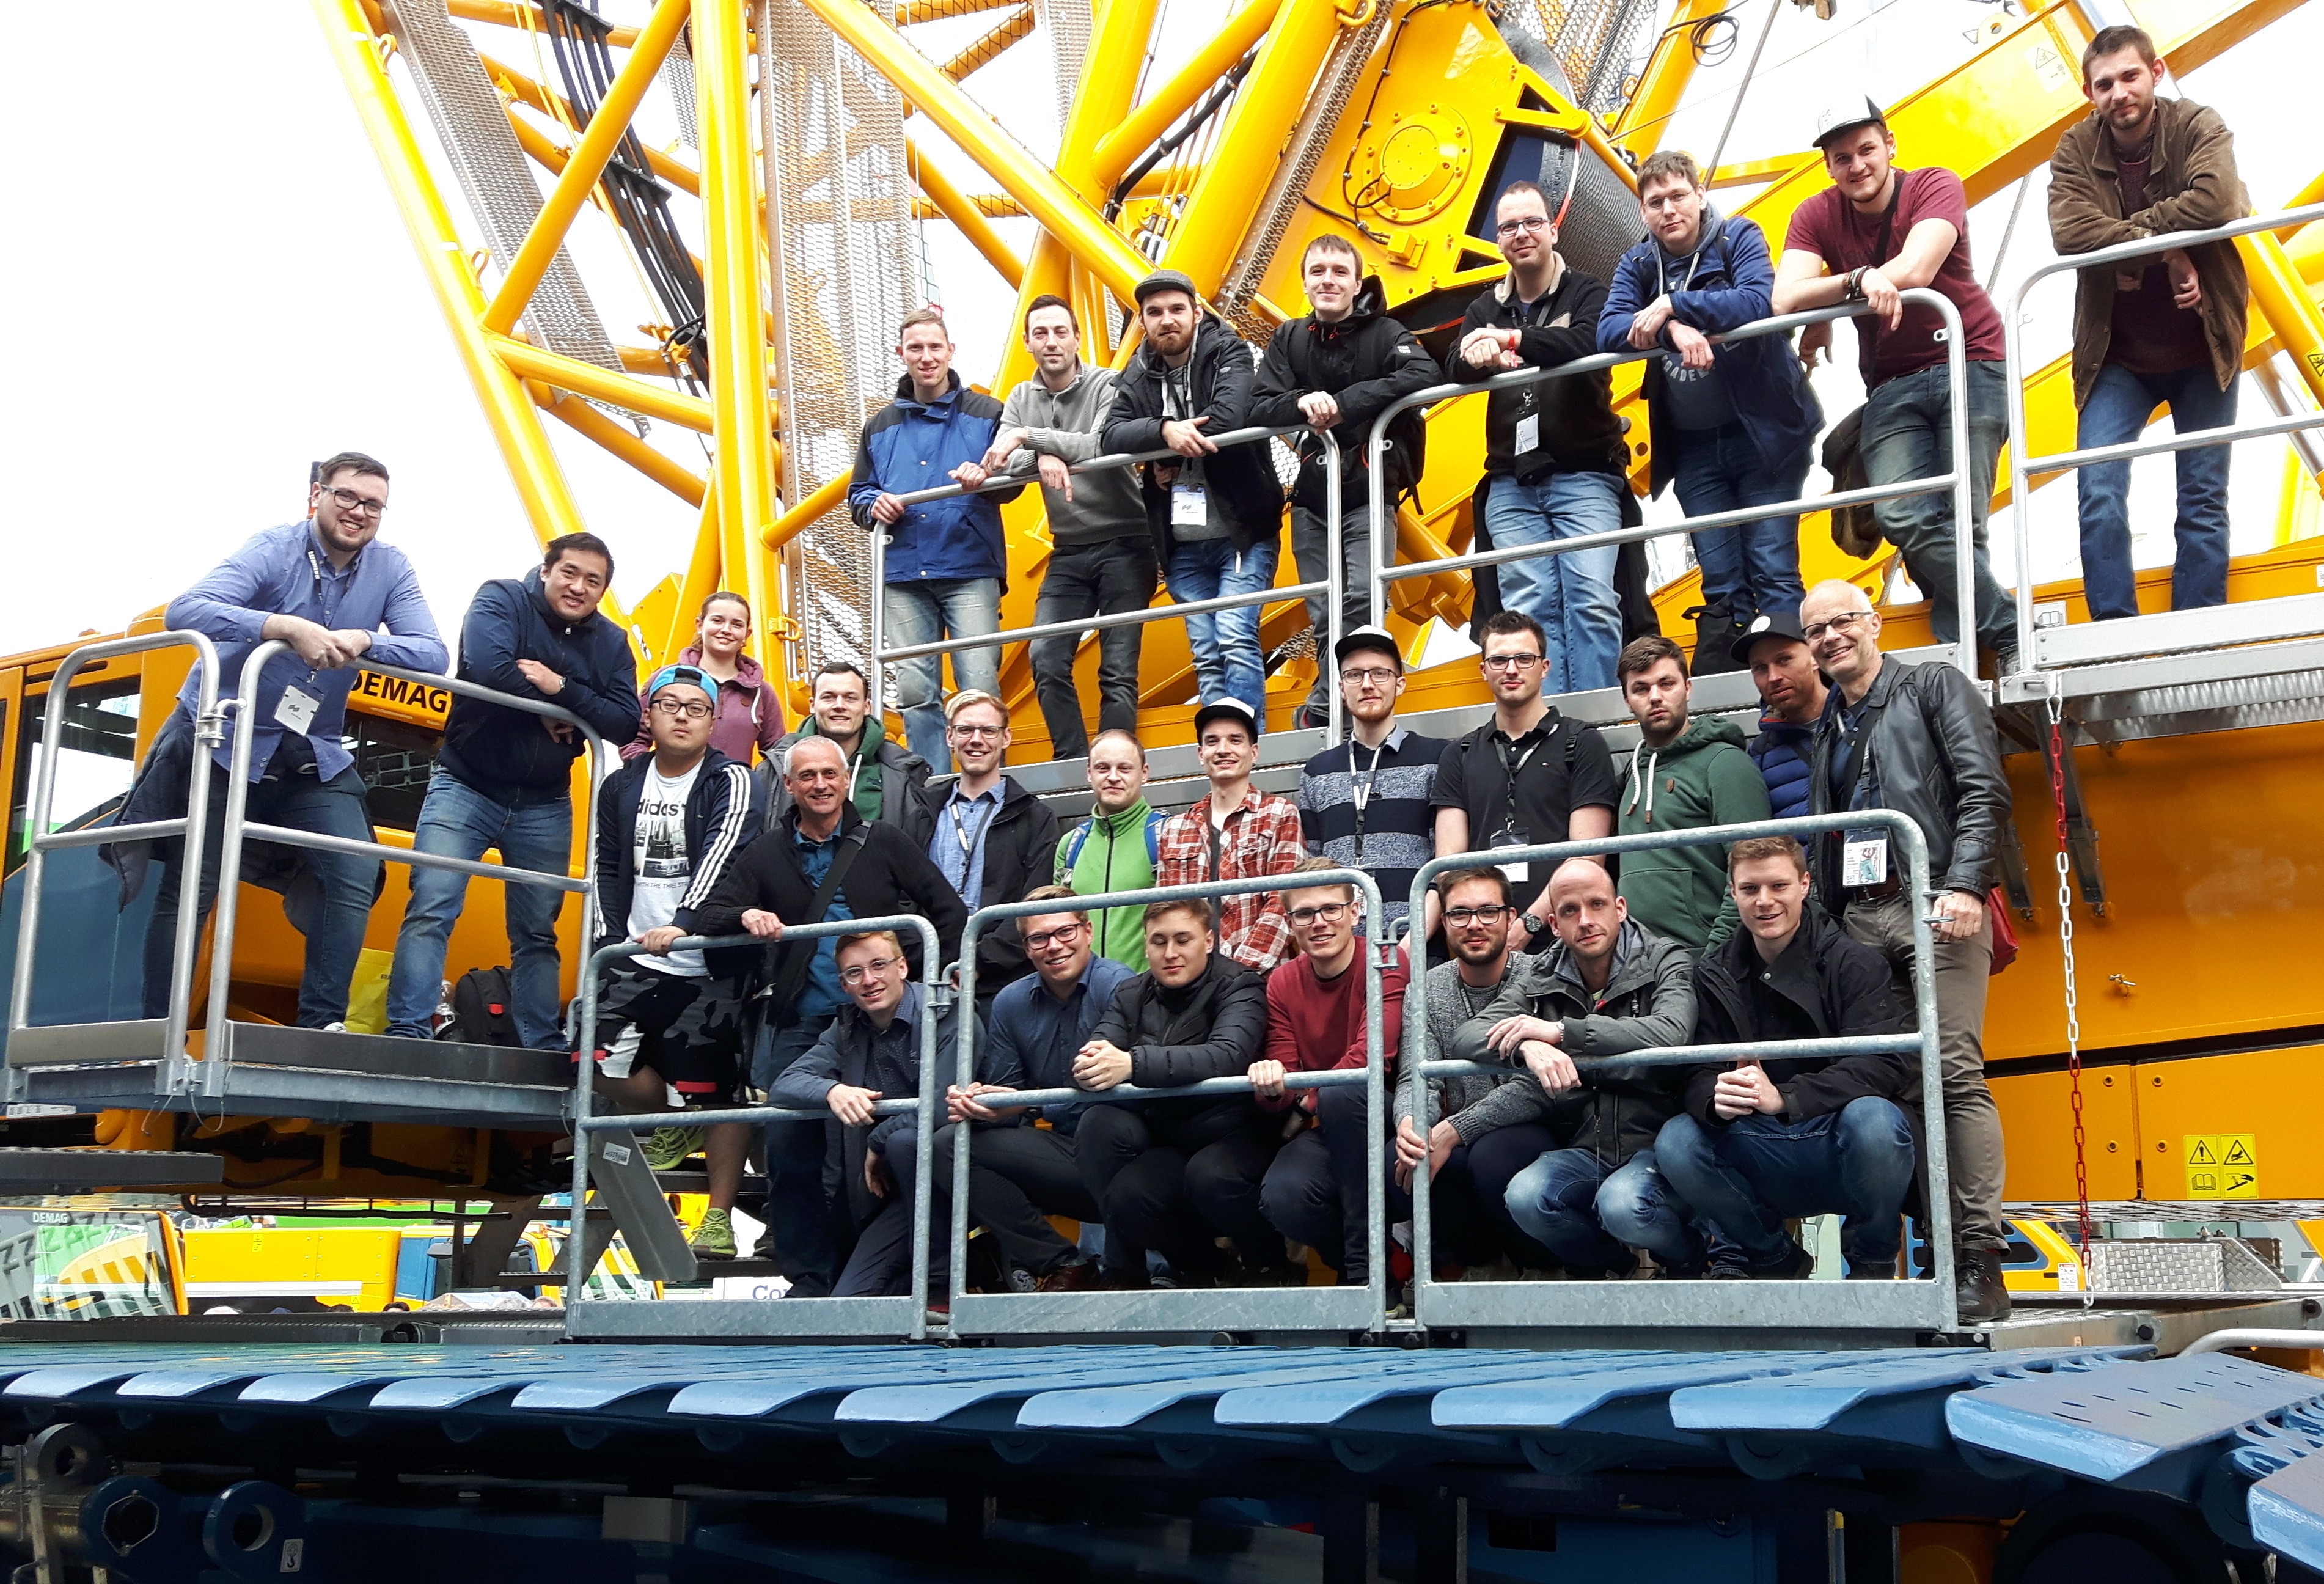 Exkursion von Studierenden der HTW Dresden zur Fachmesse für Baumaschinen (Bauma)